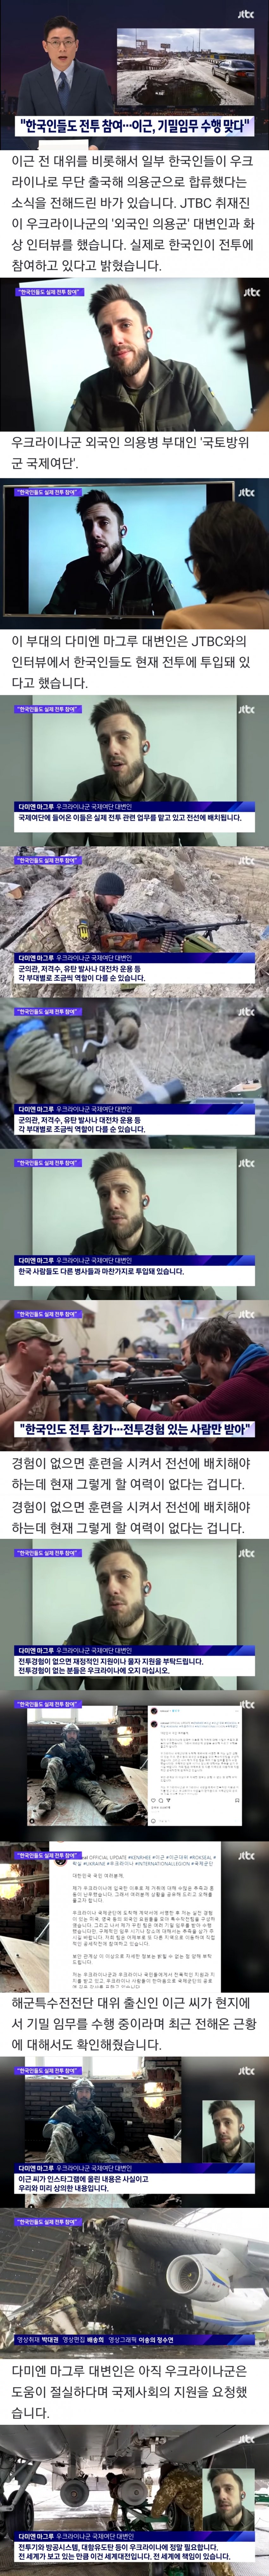 우크라이나 의용군 대변인이 전하는 이근 근황